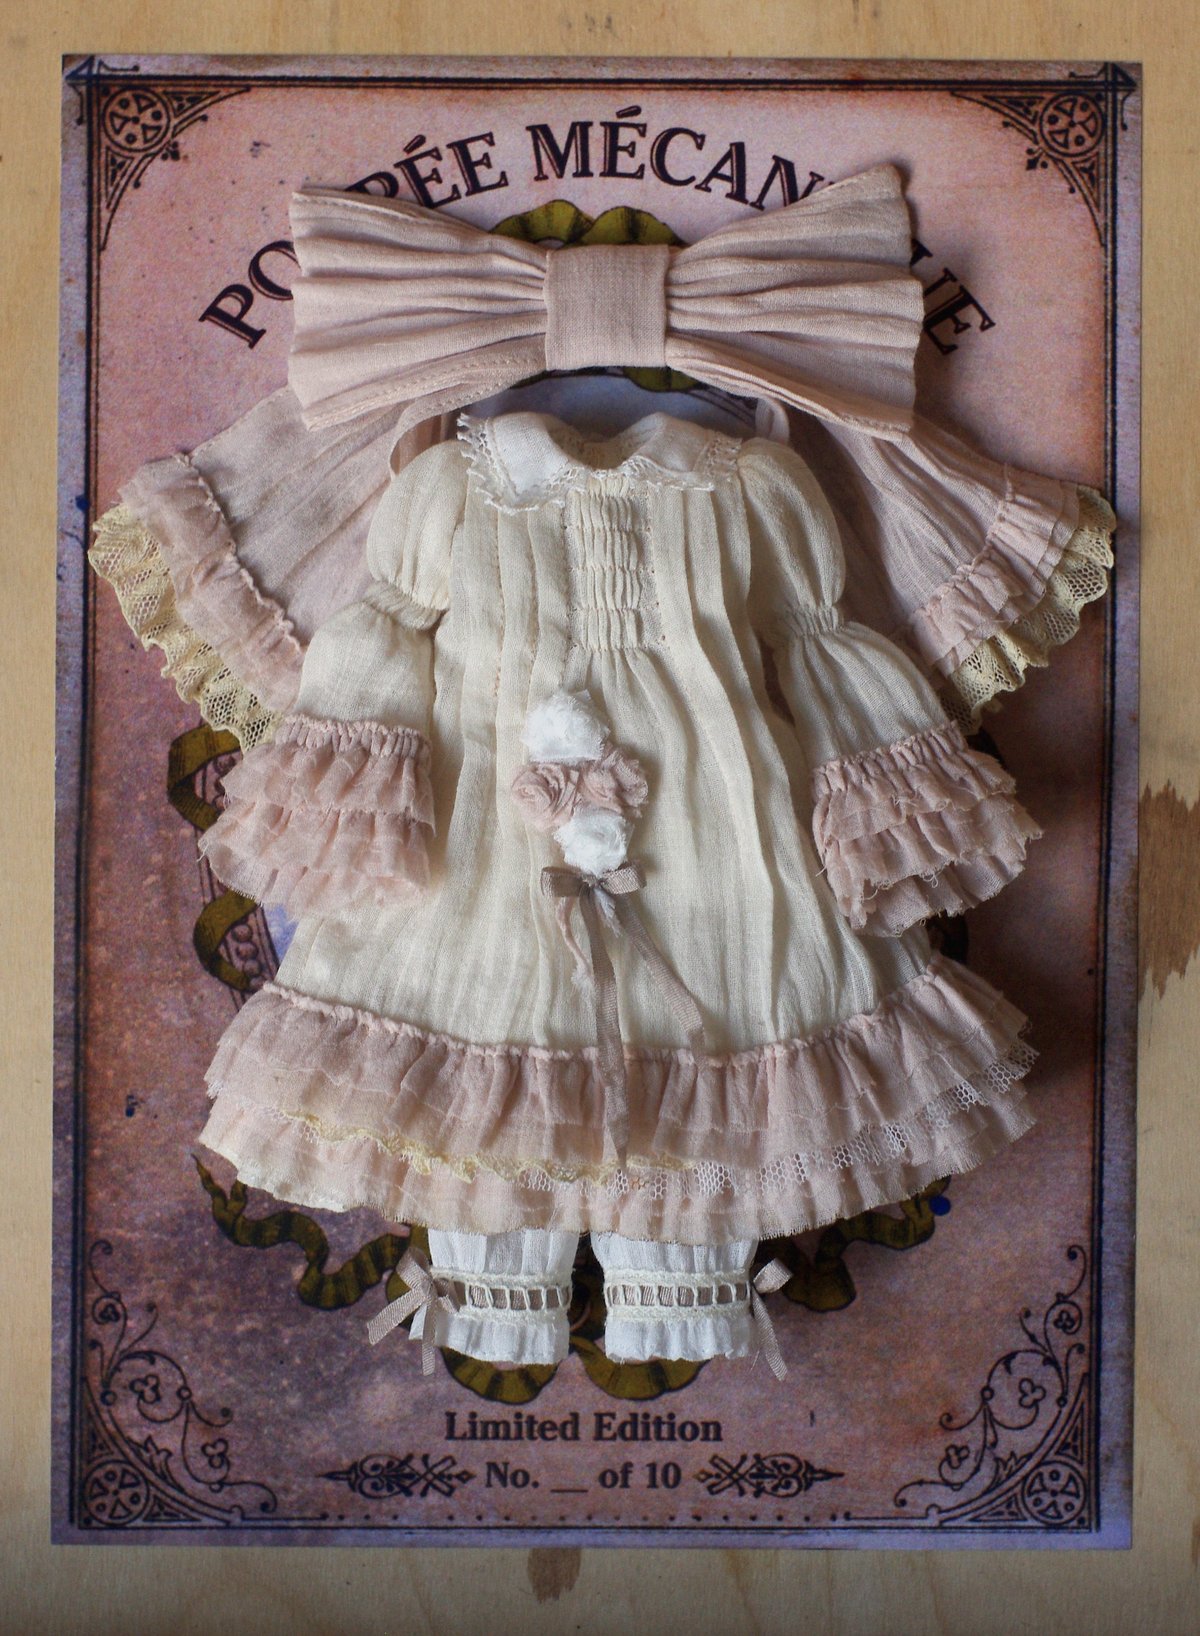 Image of "Clara" dress set